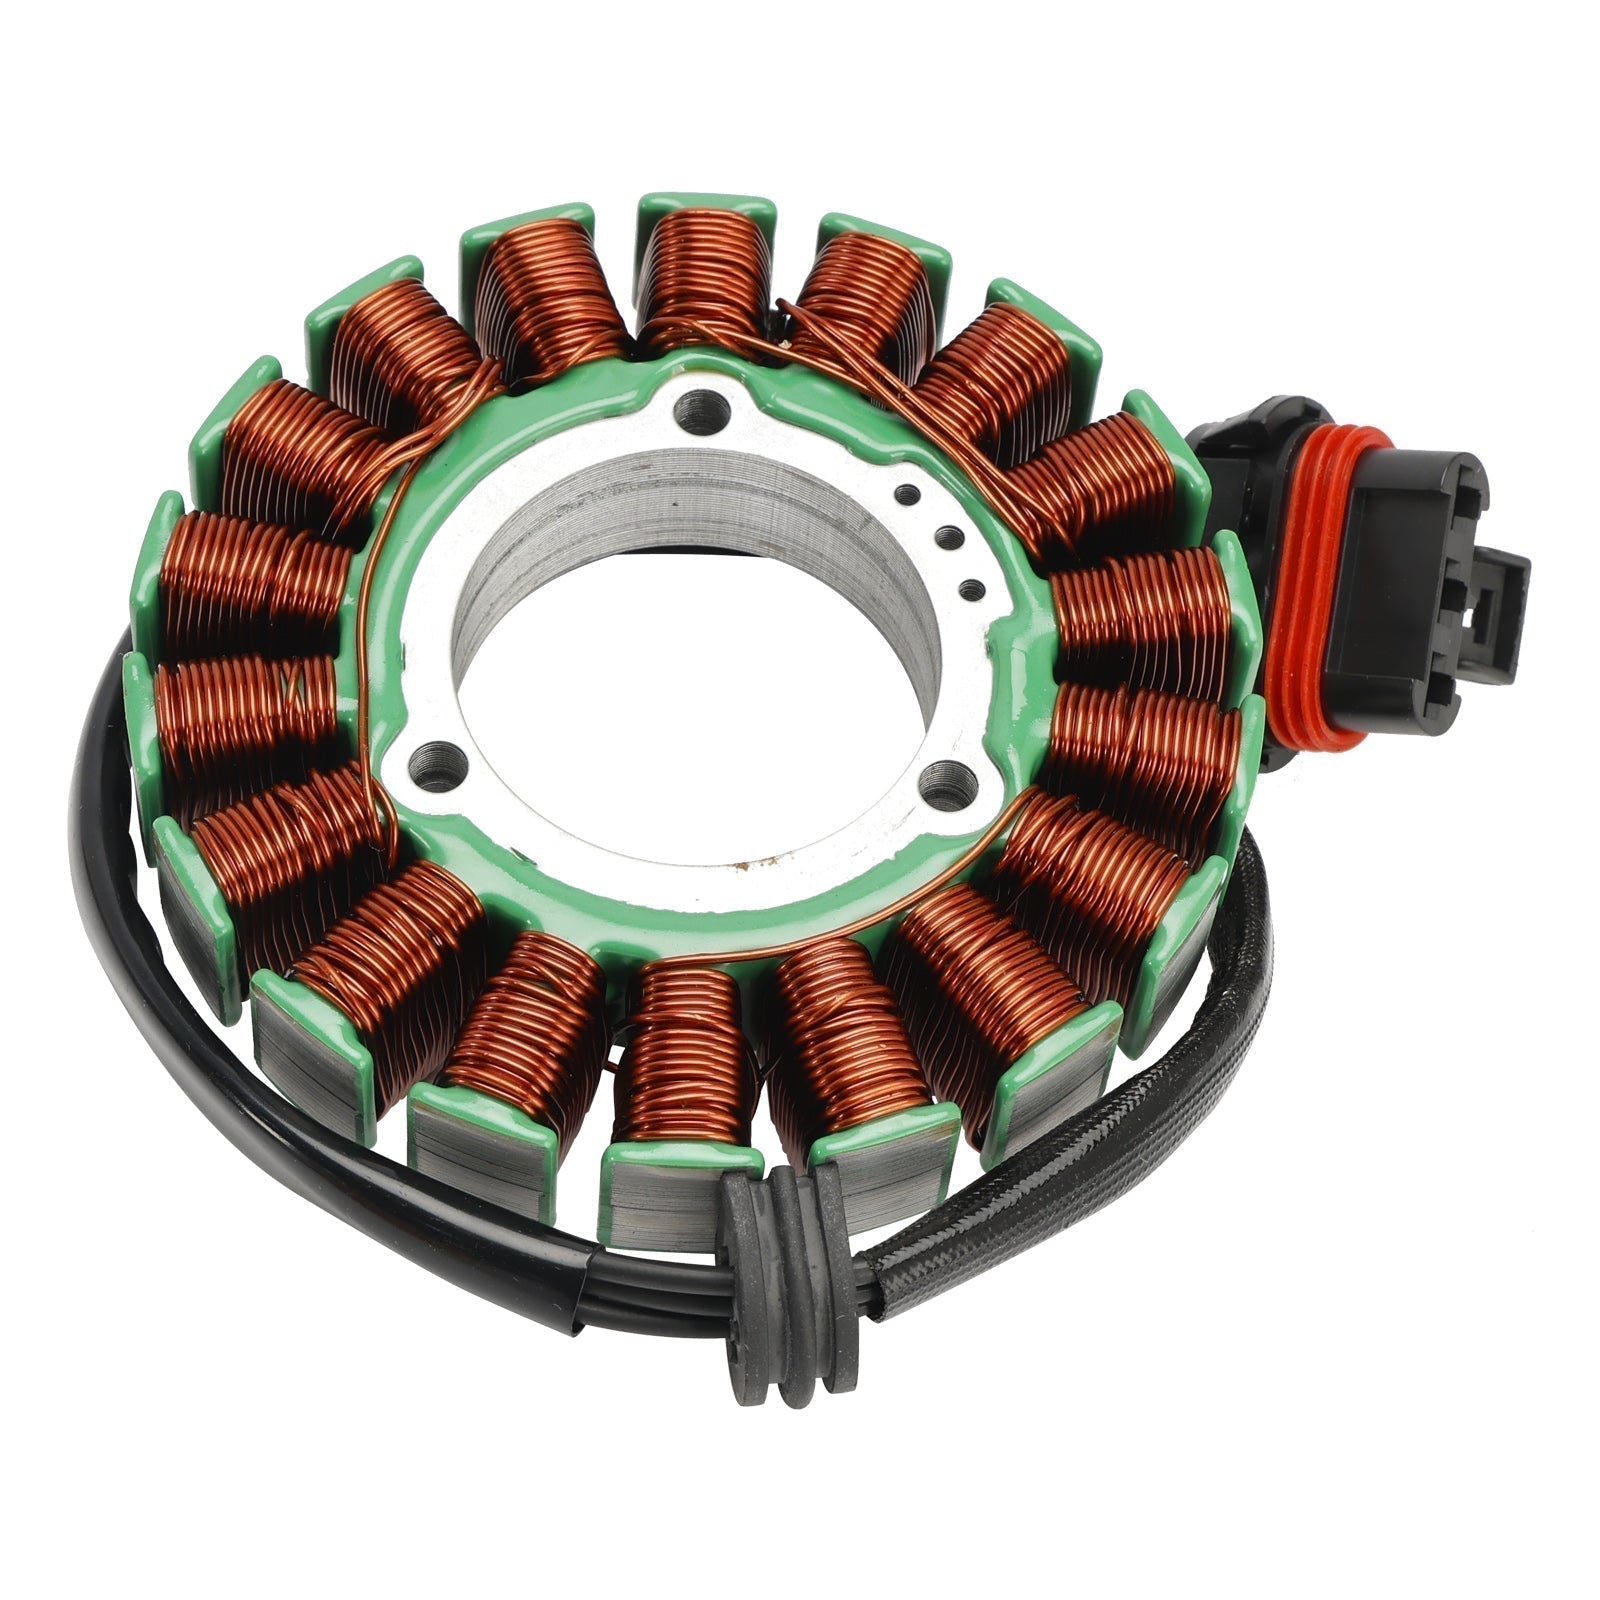 Stator de bobine magnétique Polaris RZR 4 900 + régulateur de tension + joint Assy 2014-2018 4013970